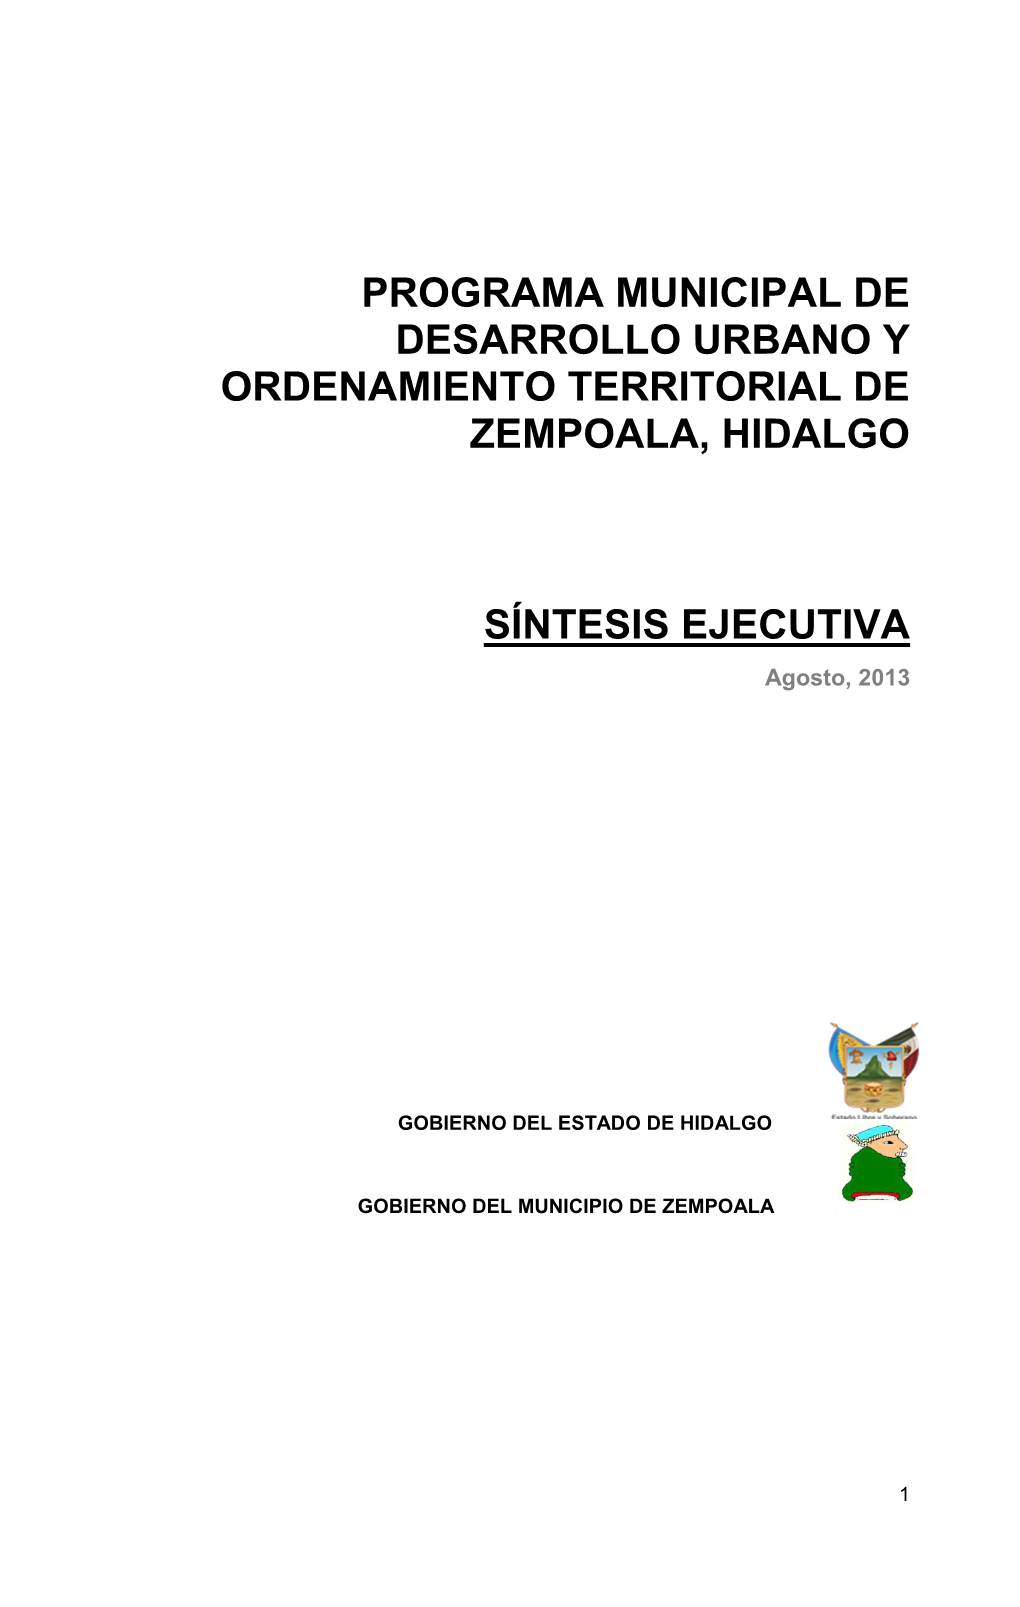 Programa Municipal De Desarrollo Urbano Y Ordenamiento Territorial De Zempoala, Hidalgo